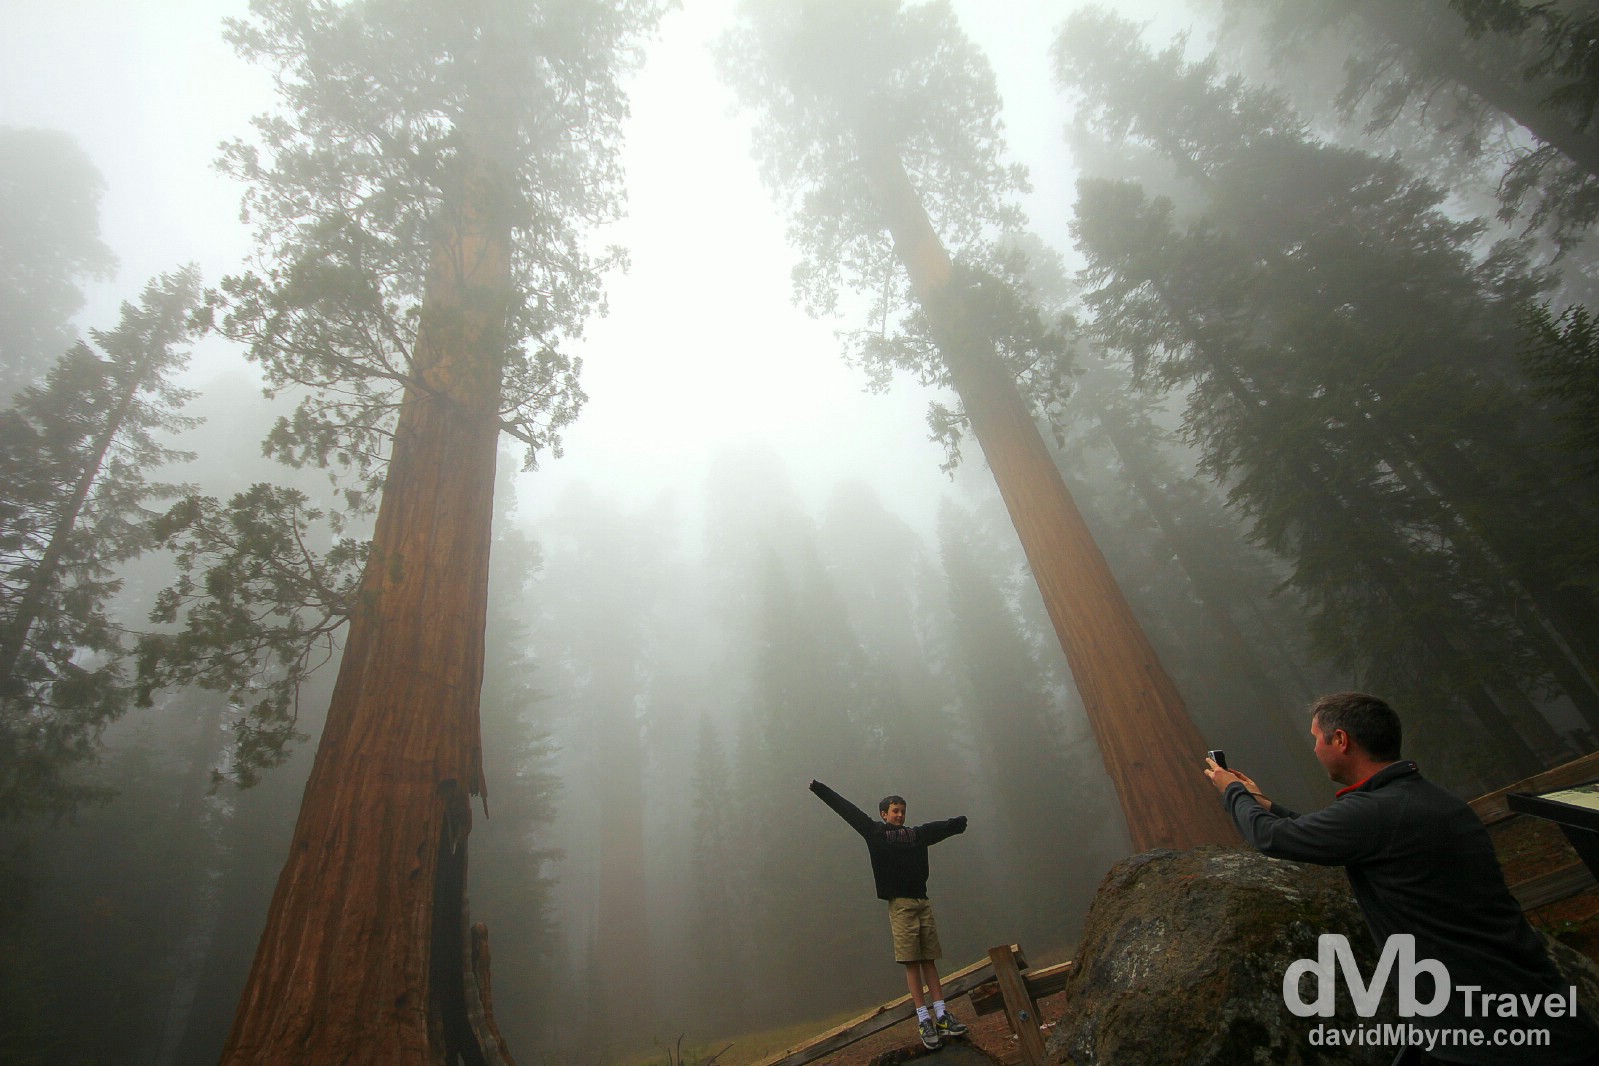  pequeñas curiosidades  - Página 17 Pose.-Sequoia-National-Park-California-USA.